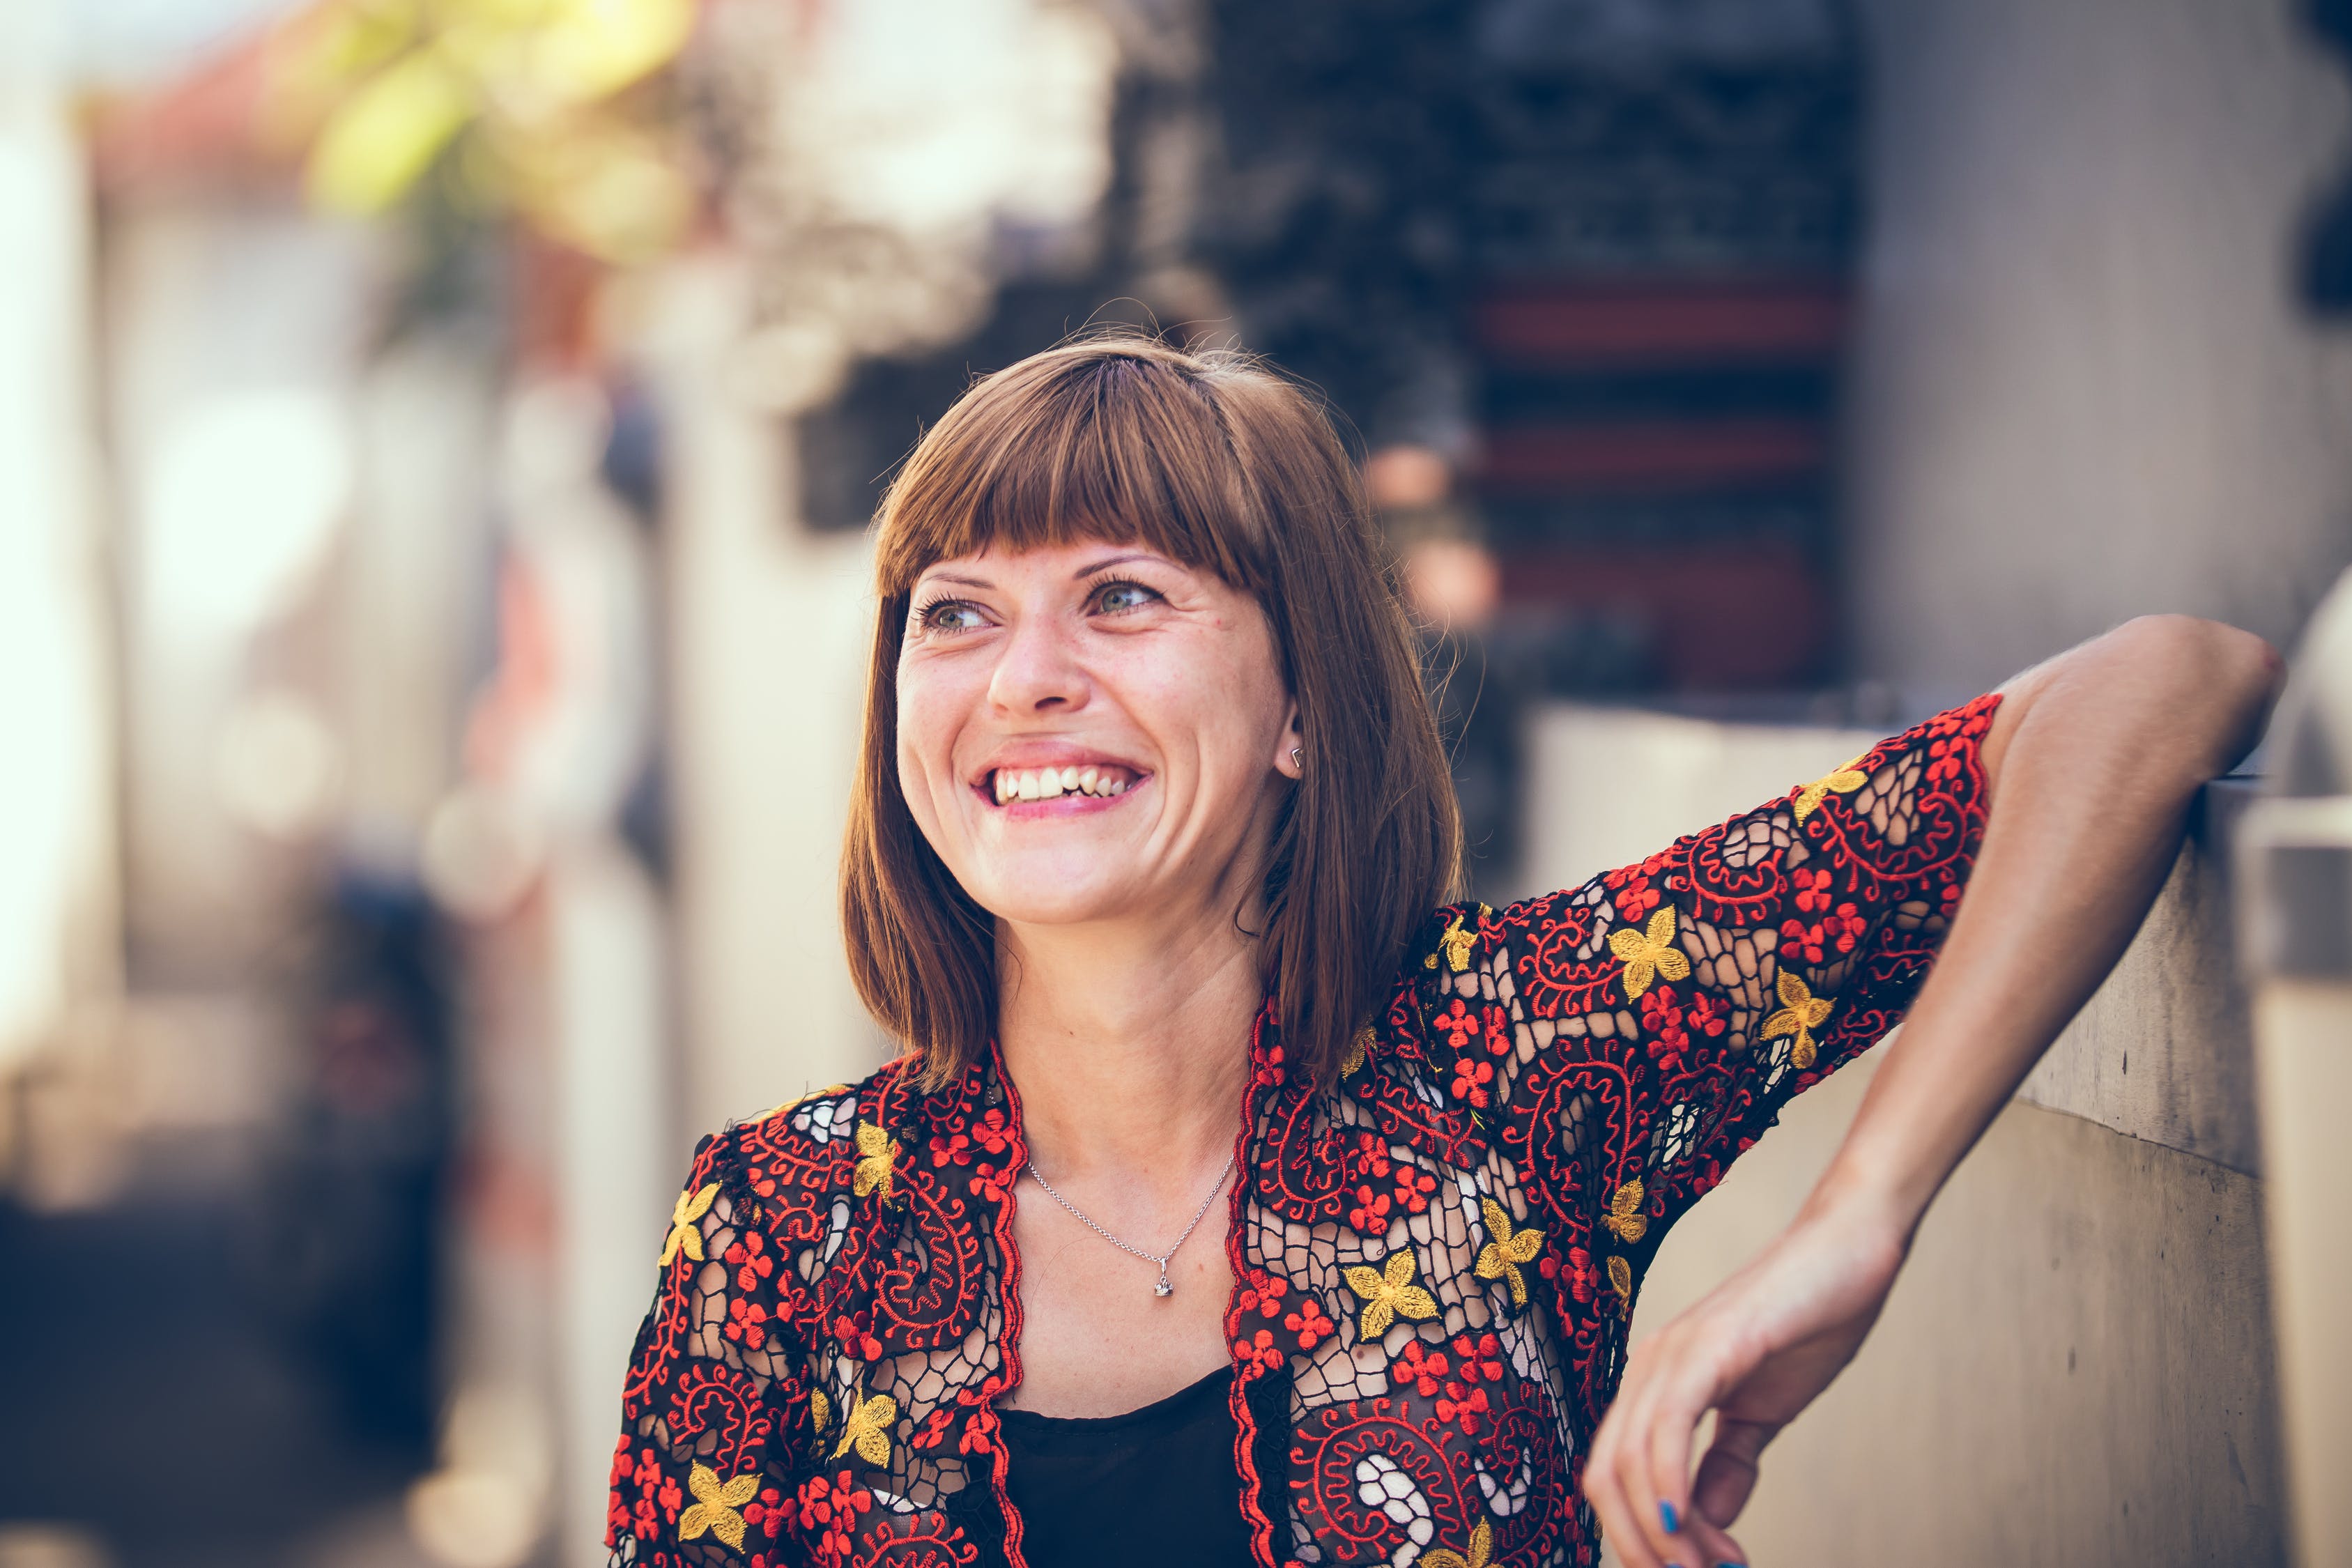 Mujer sonriendo recostada de un muro. | Foto: Pexels